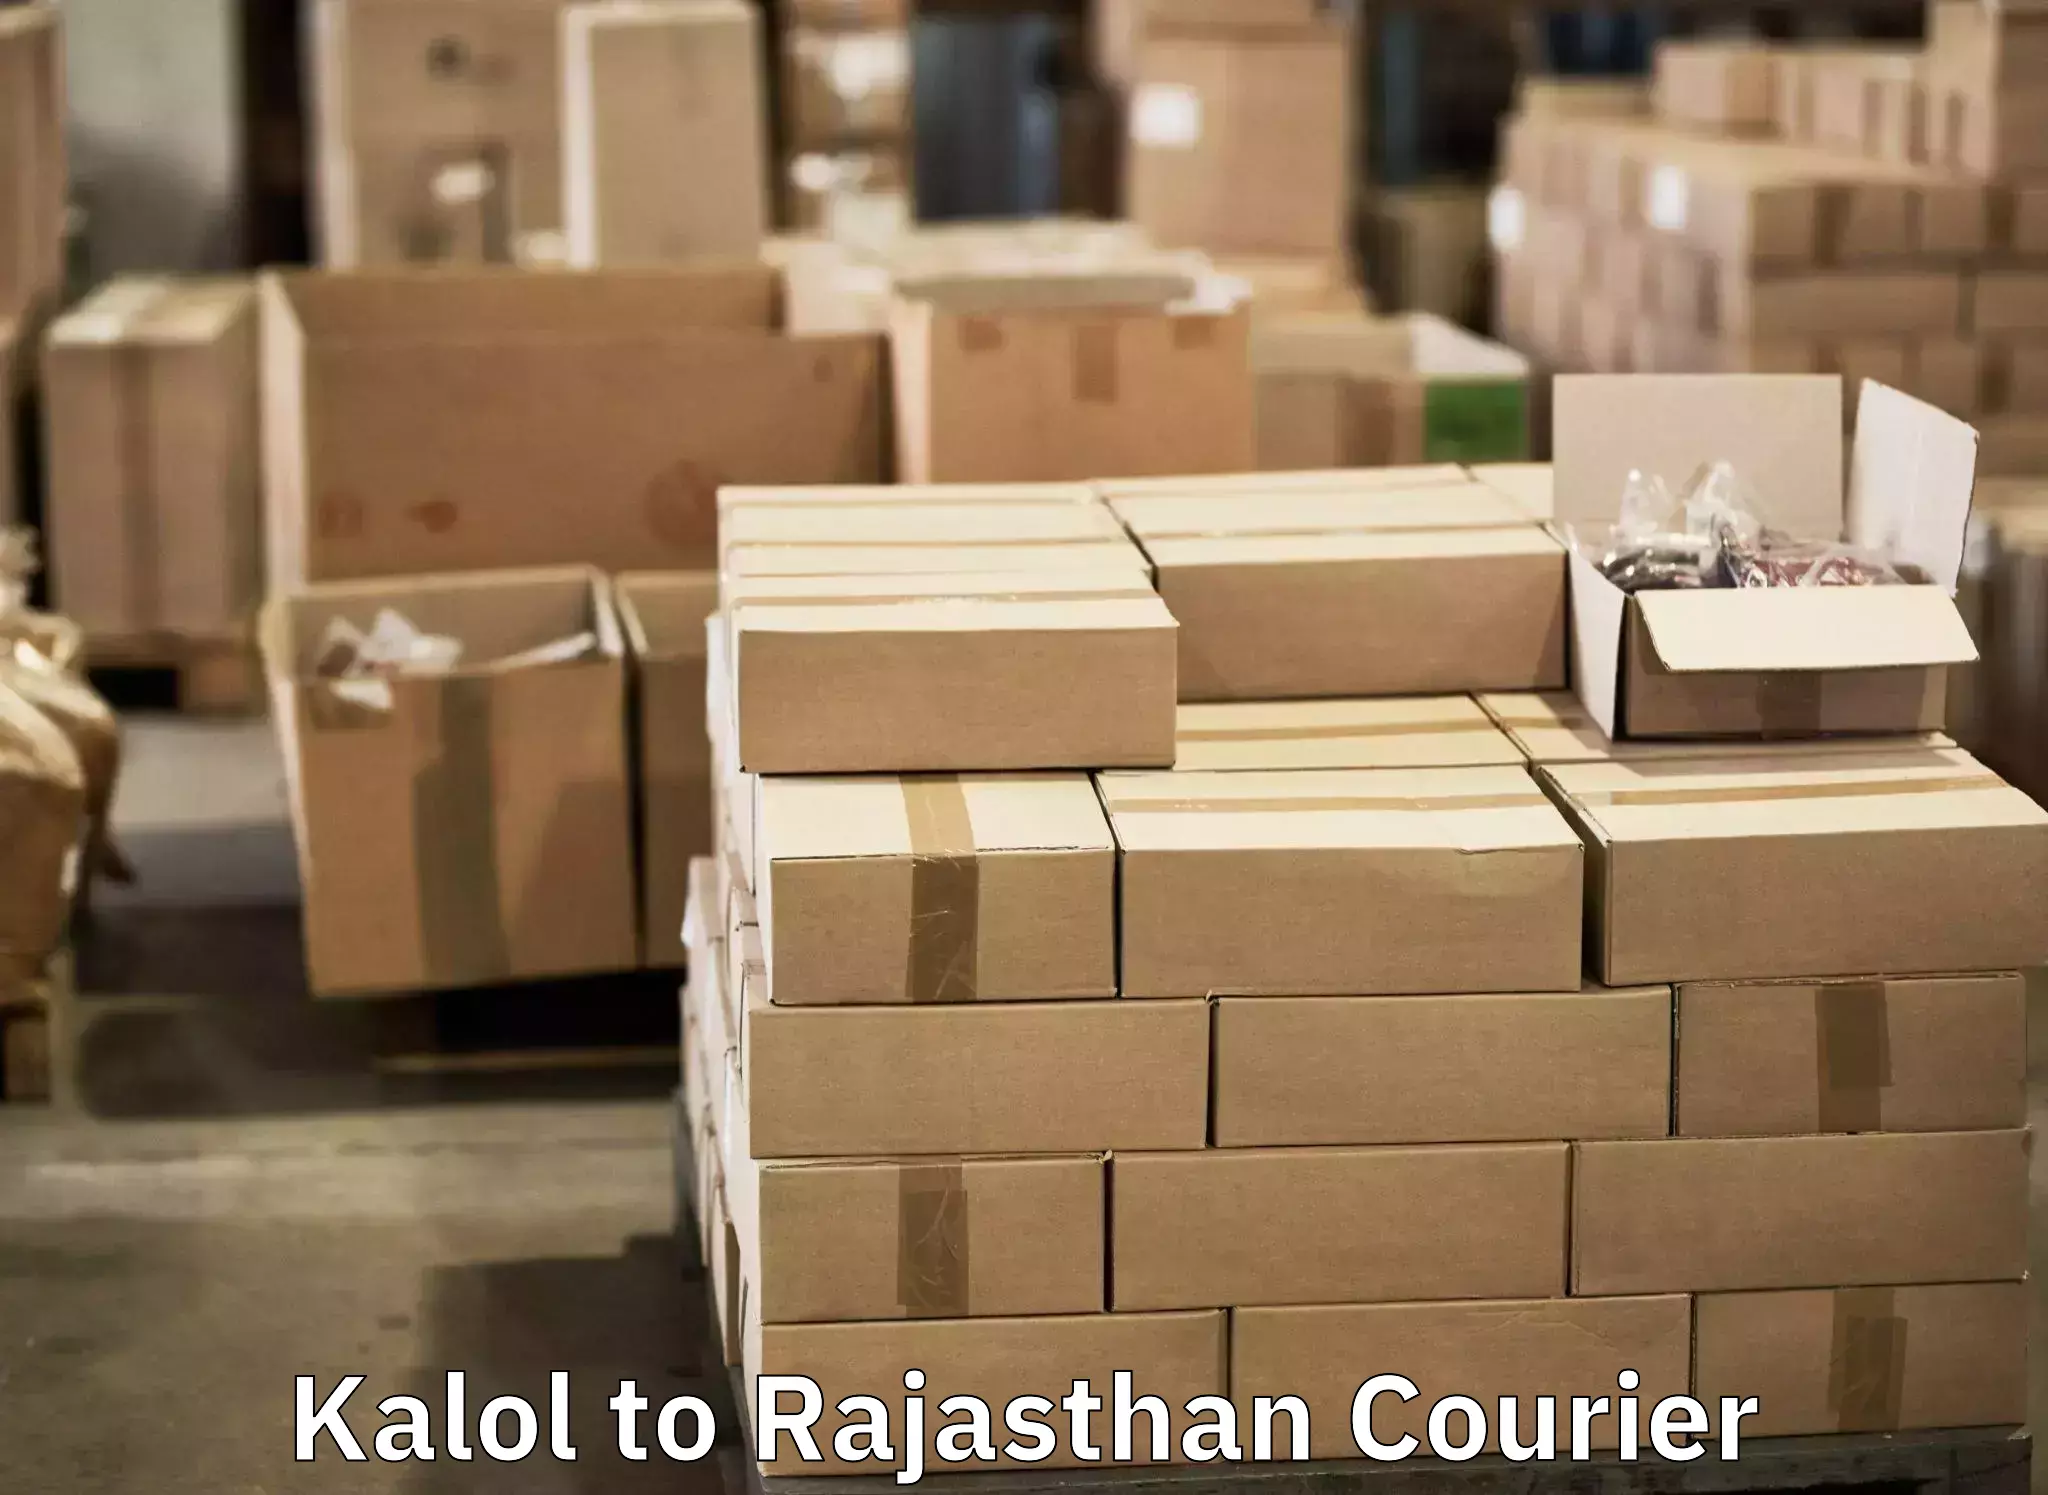 Baggage transport professionals Kalol to Jaipur